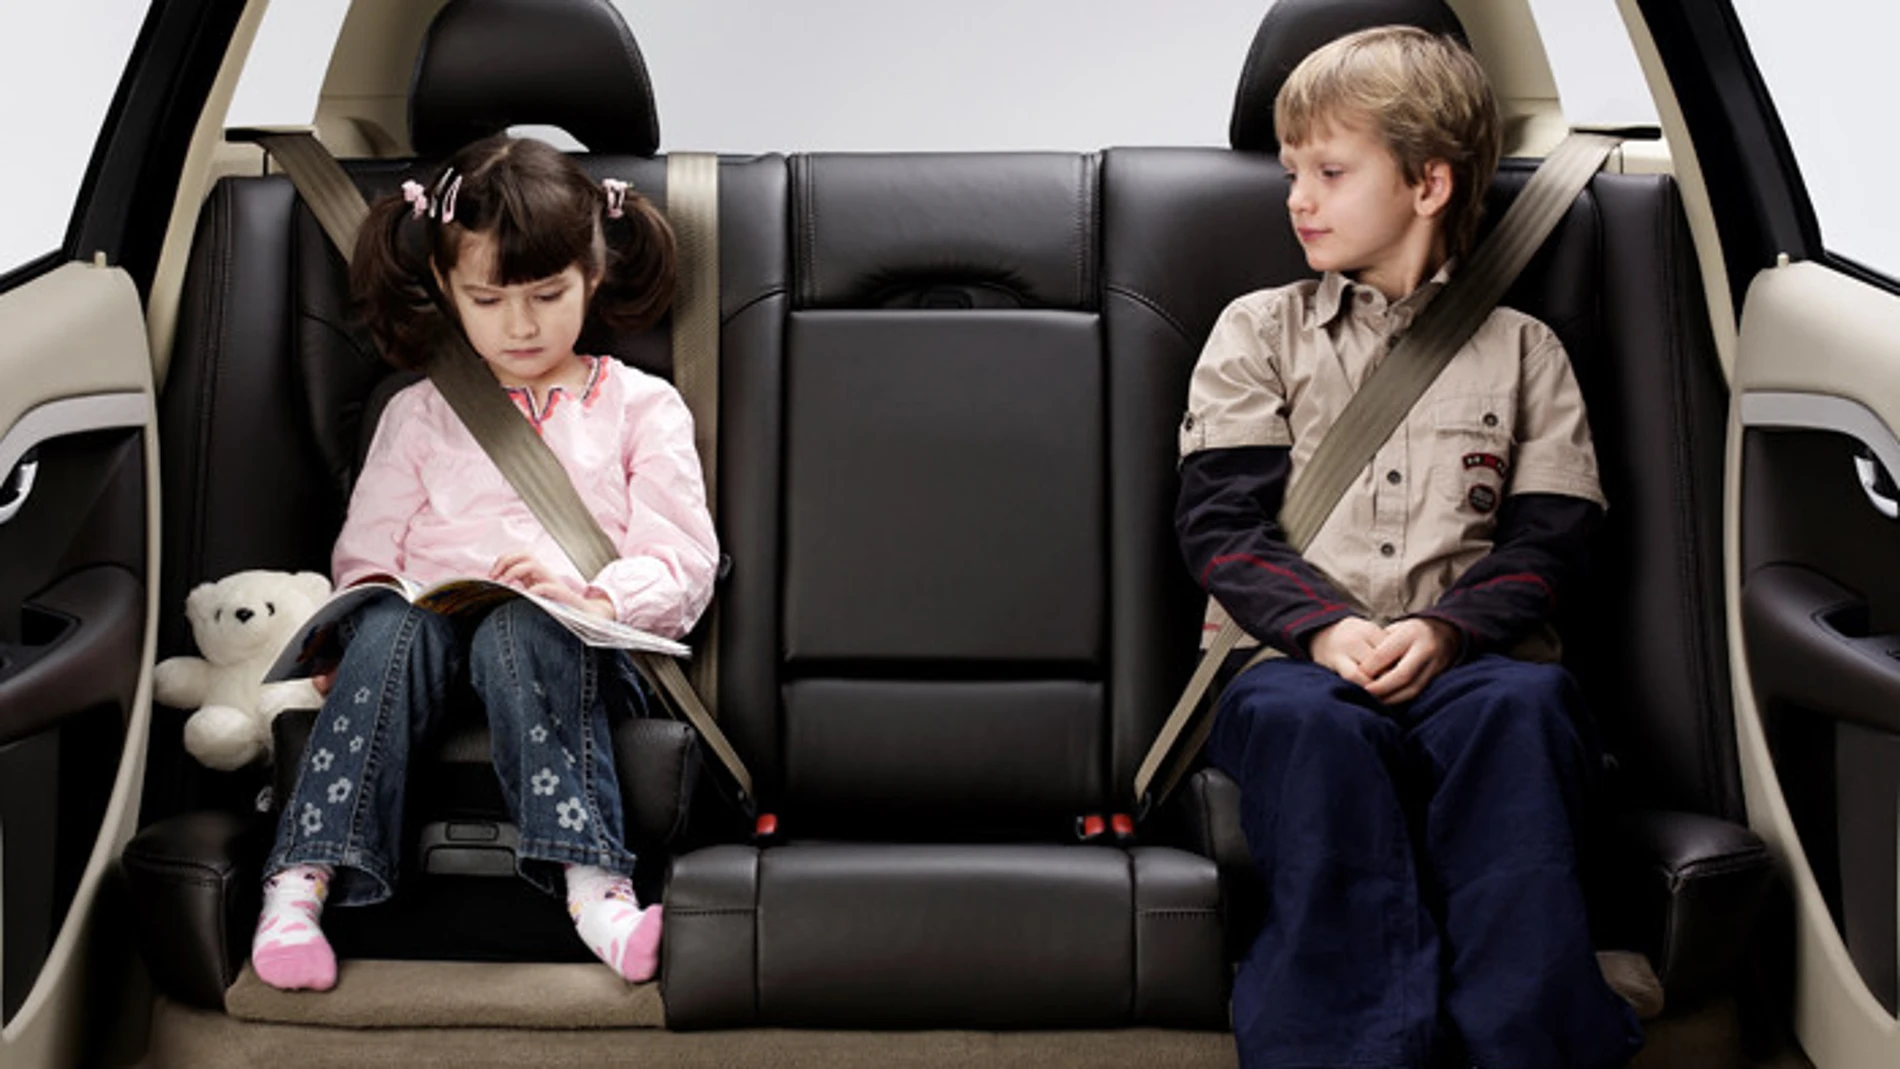 Algunas aclaraciones sobre la normativa relativa a las sillas infantiles y la seguridad en el coche.